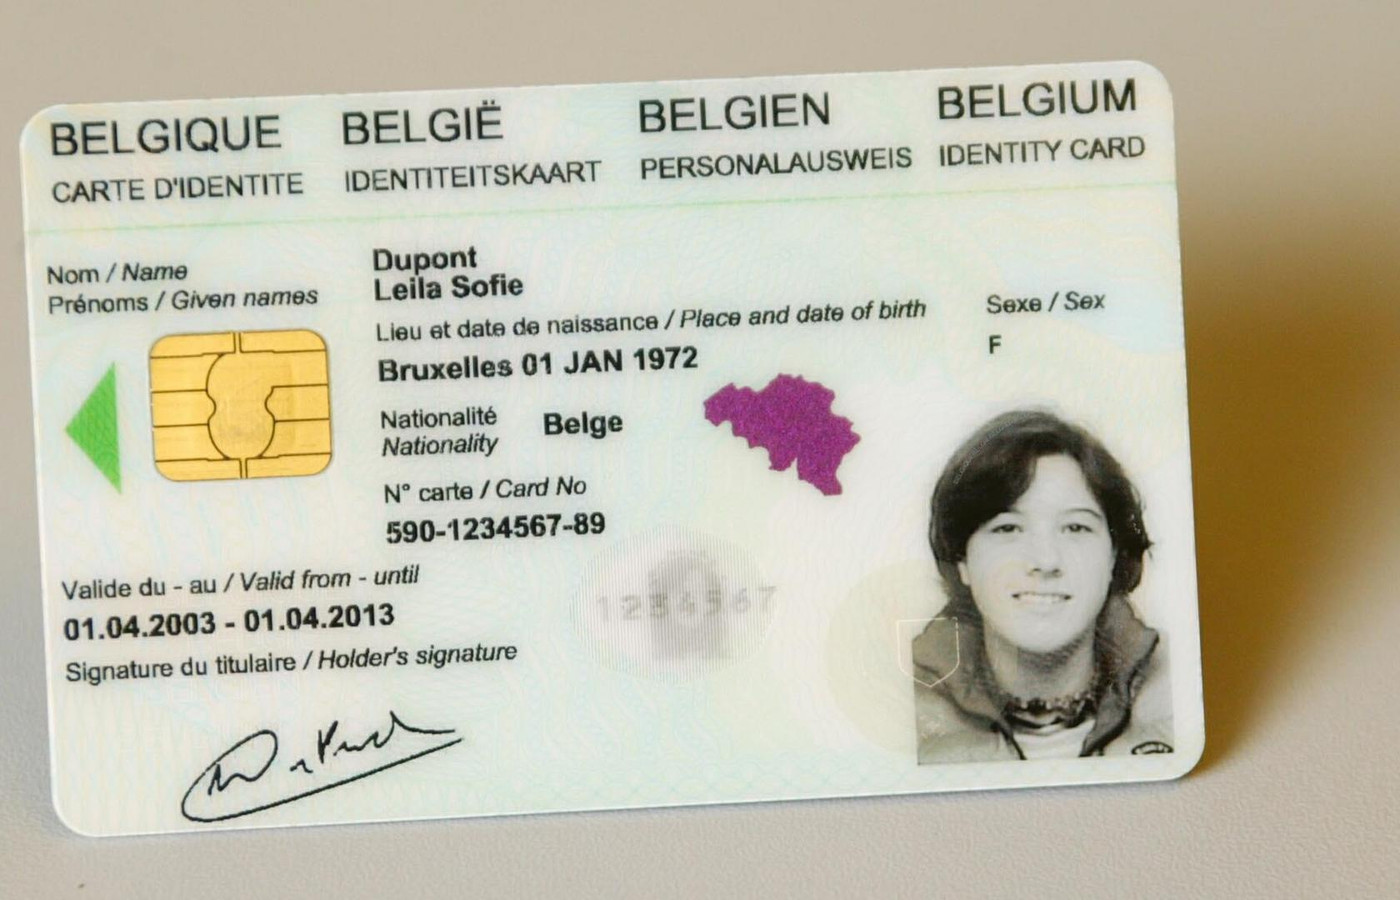 Belgium Identity Card